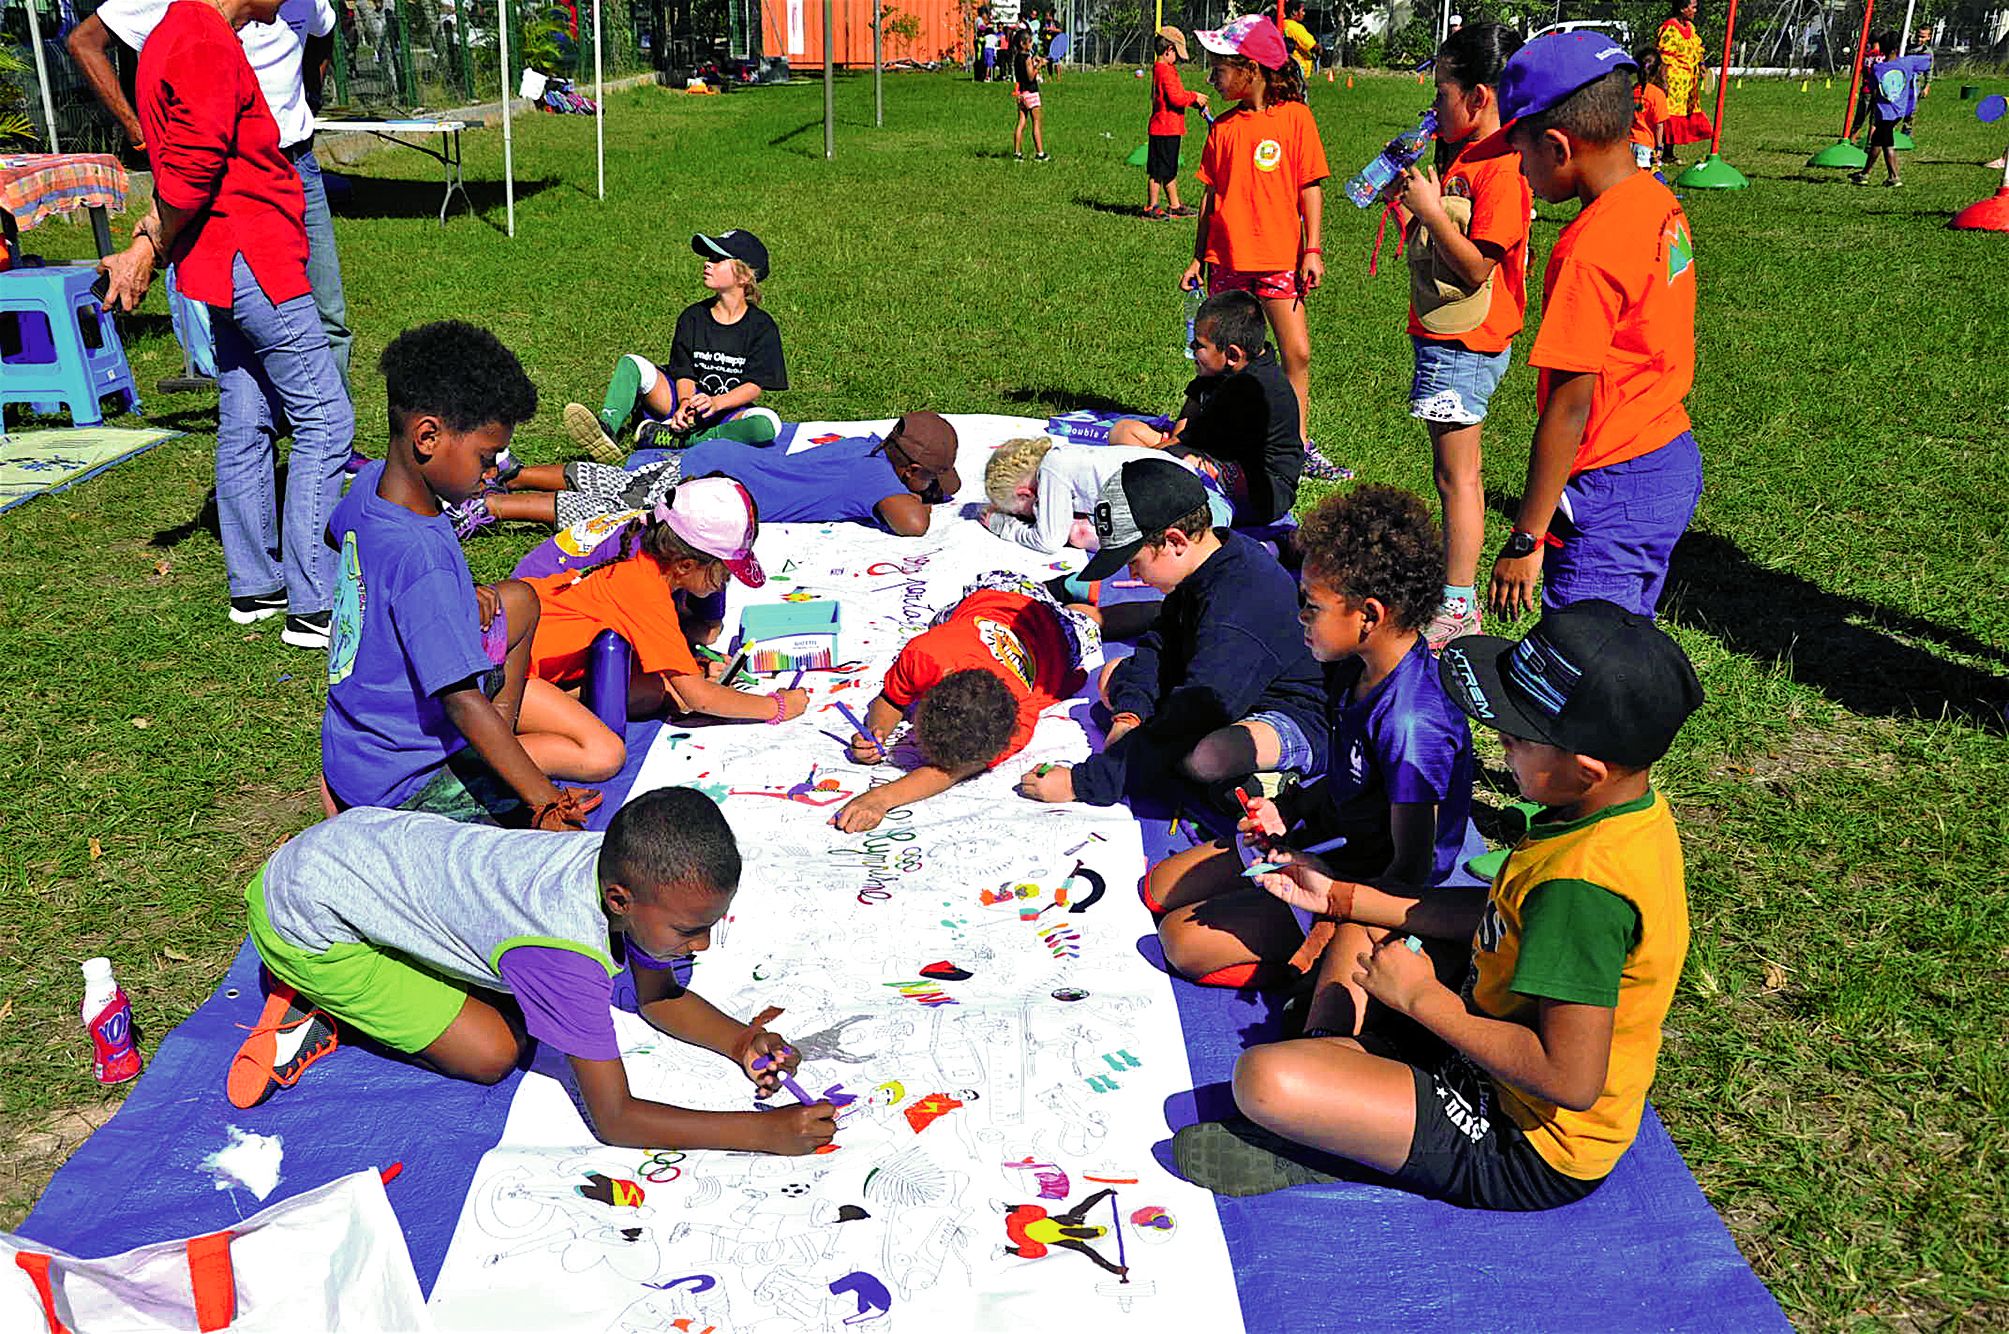 Les enfants des différentes équipes avaient à colorier à tour de rôle une grande frise « Venez partager les valeurs du sport et de l’olympisme ».